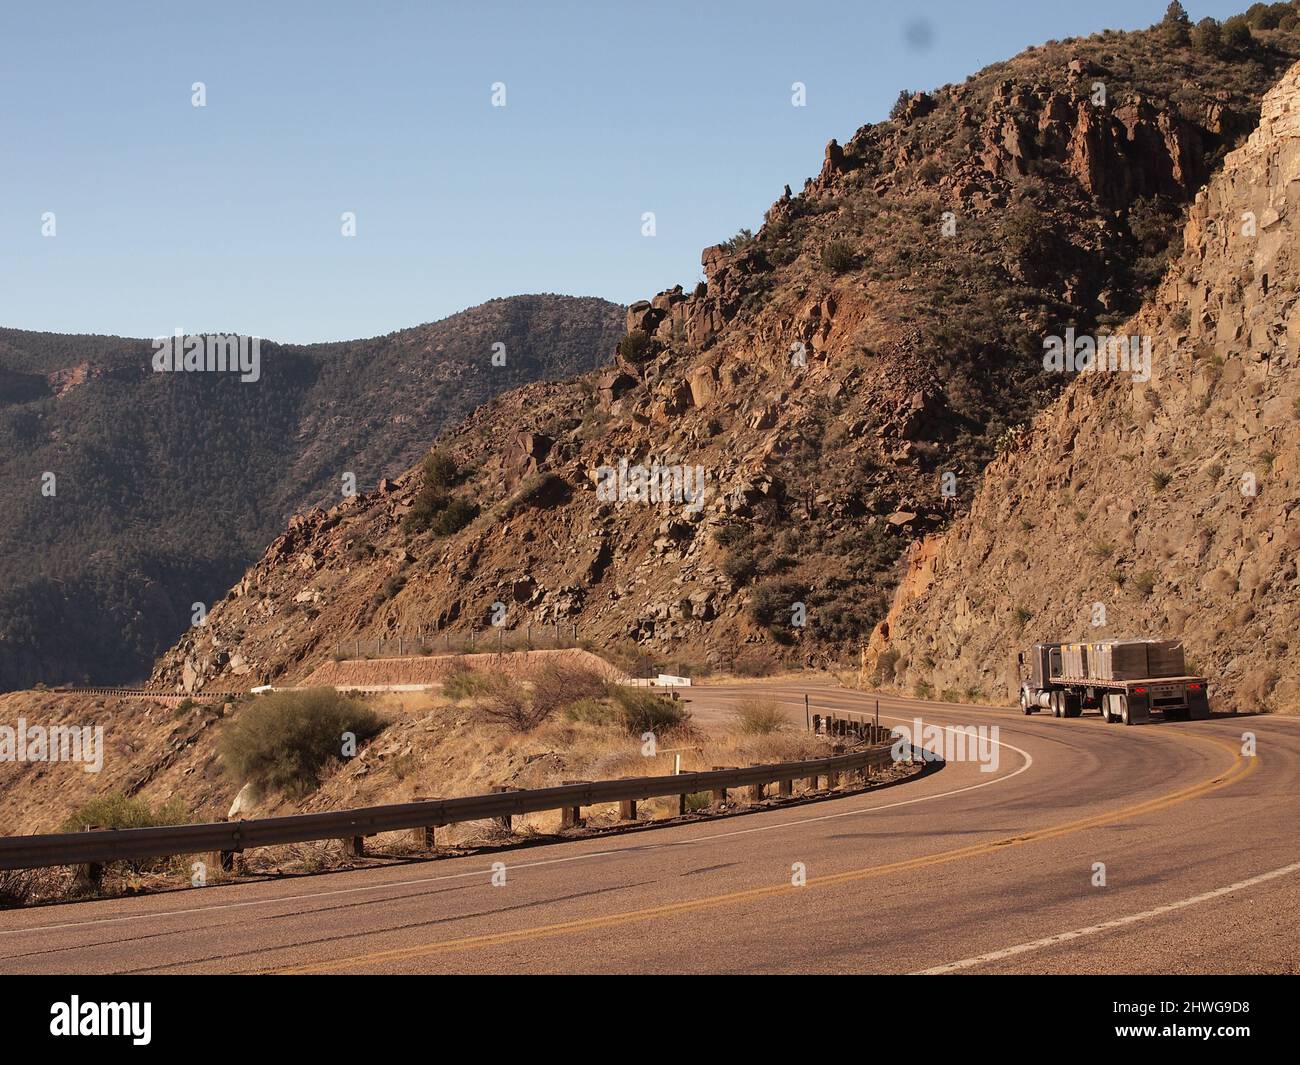 US 60 nel centro dell'Arizona mentre scende verso il ponte Salt River Canyon. Un grande rimorchio americano comincia il decent giù la strada tortuosa. Foto Stock